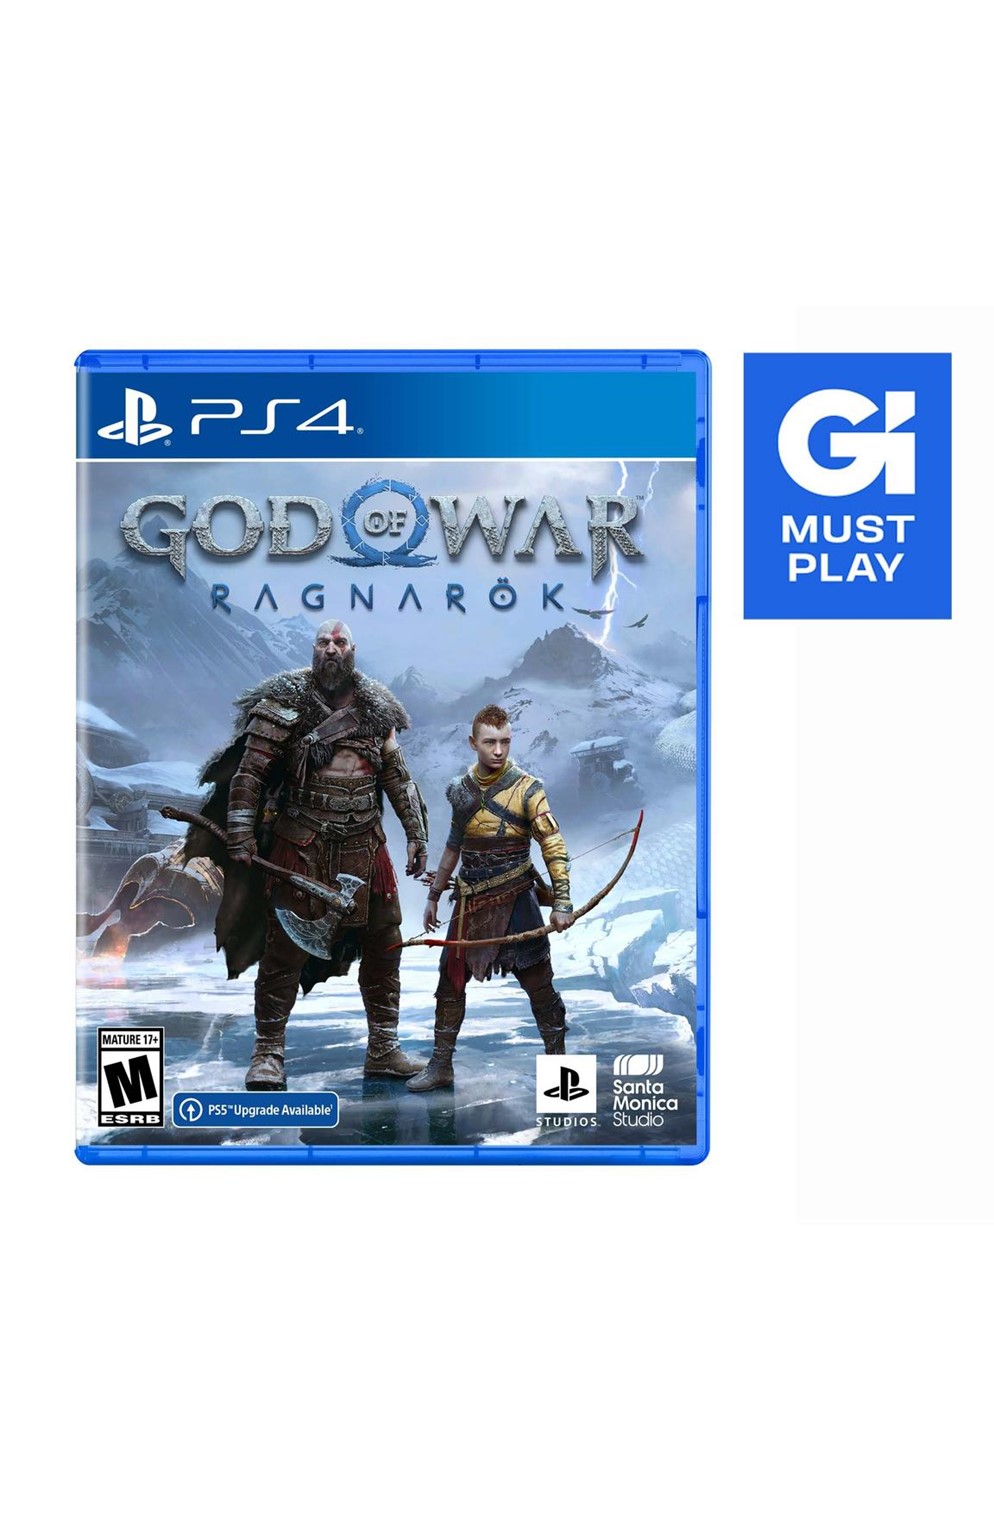 Playstation 4 Ps4 God of War Ragnarok